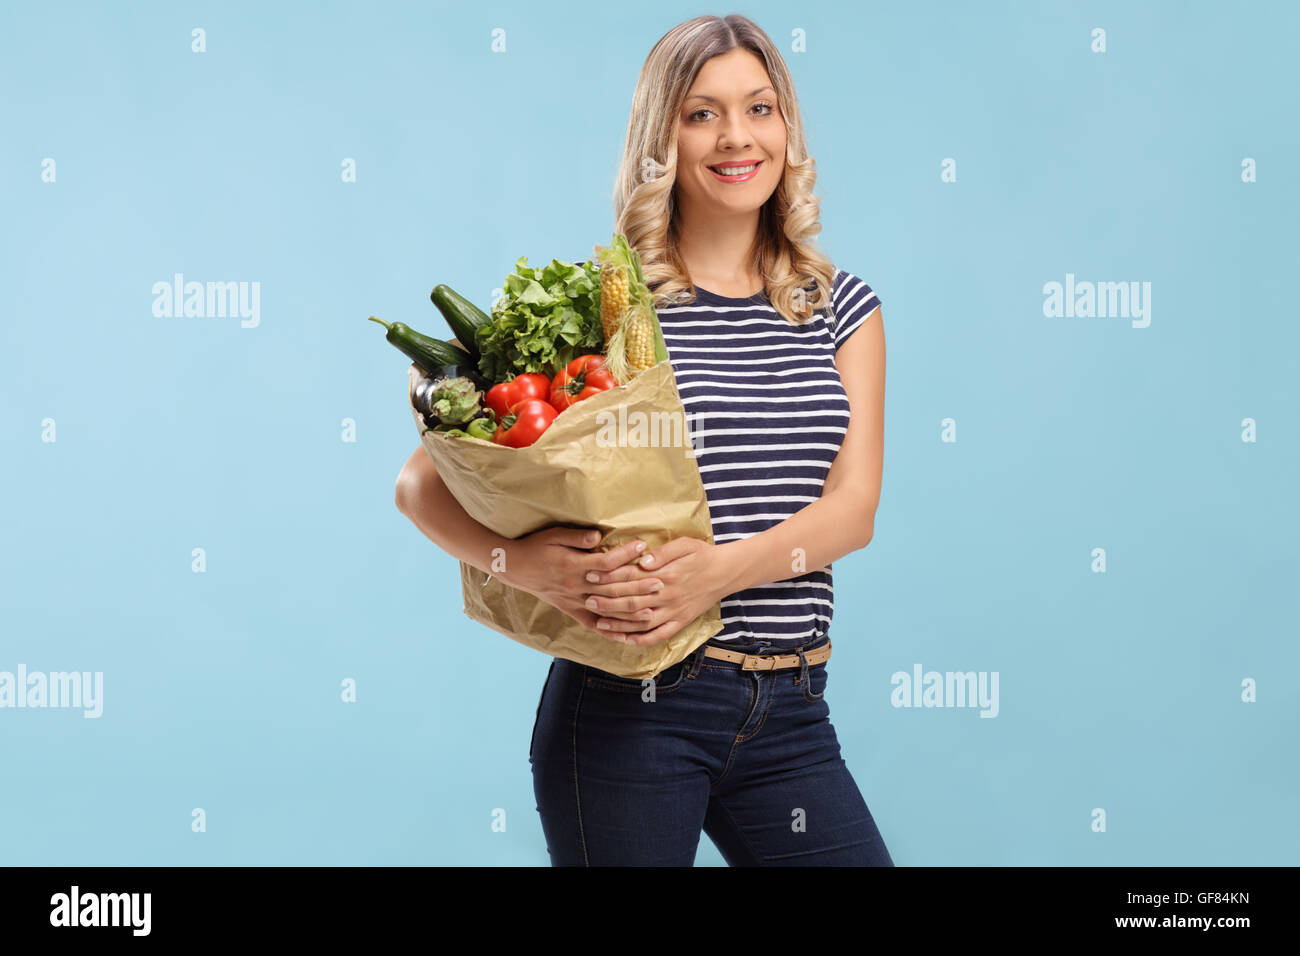 Junge Frau hält eine Einkaufstüte und schaut in die Kamera auf blauem Hintergrund Stockfoto